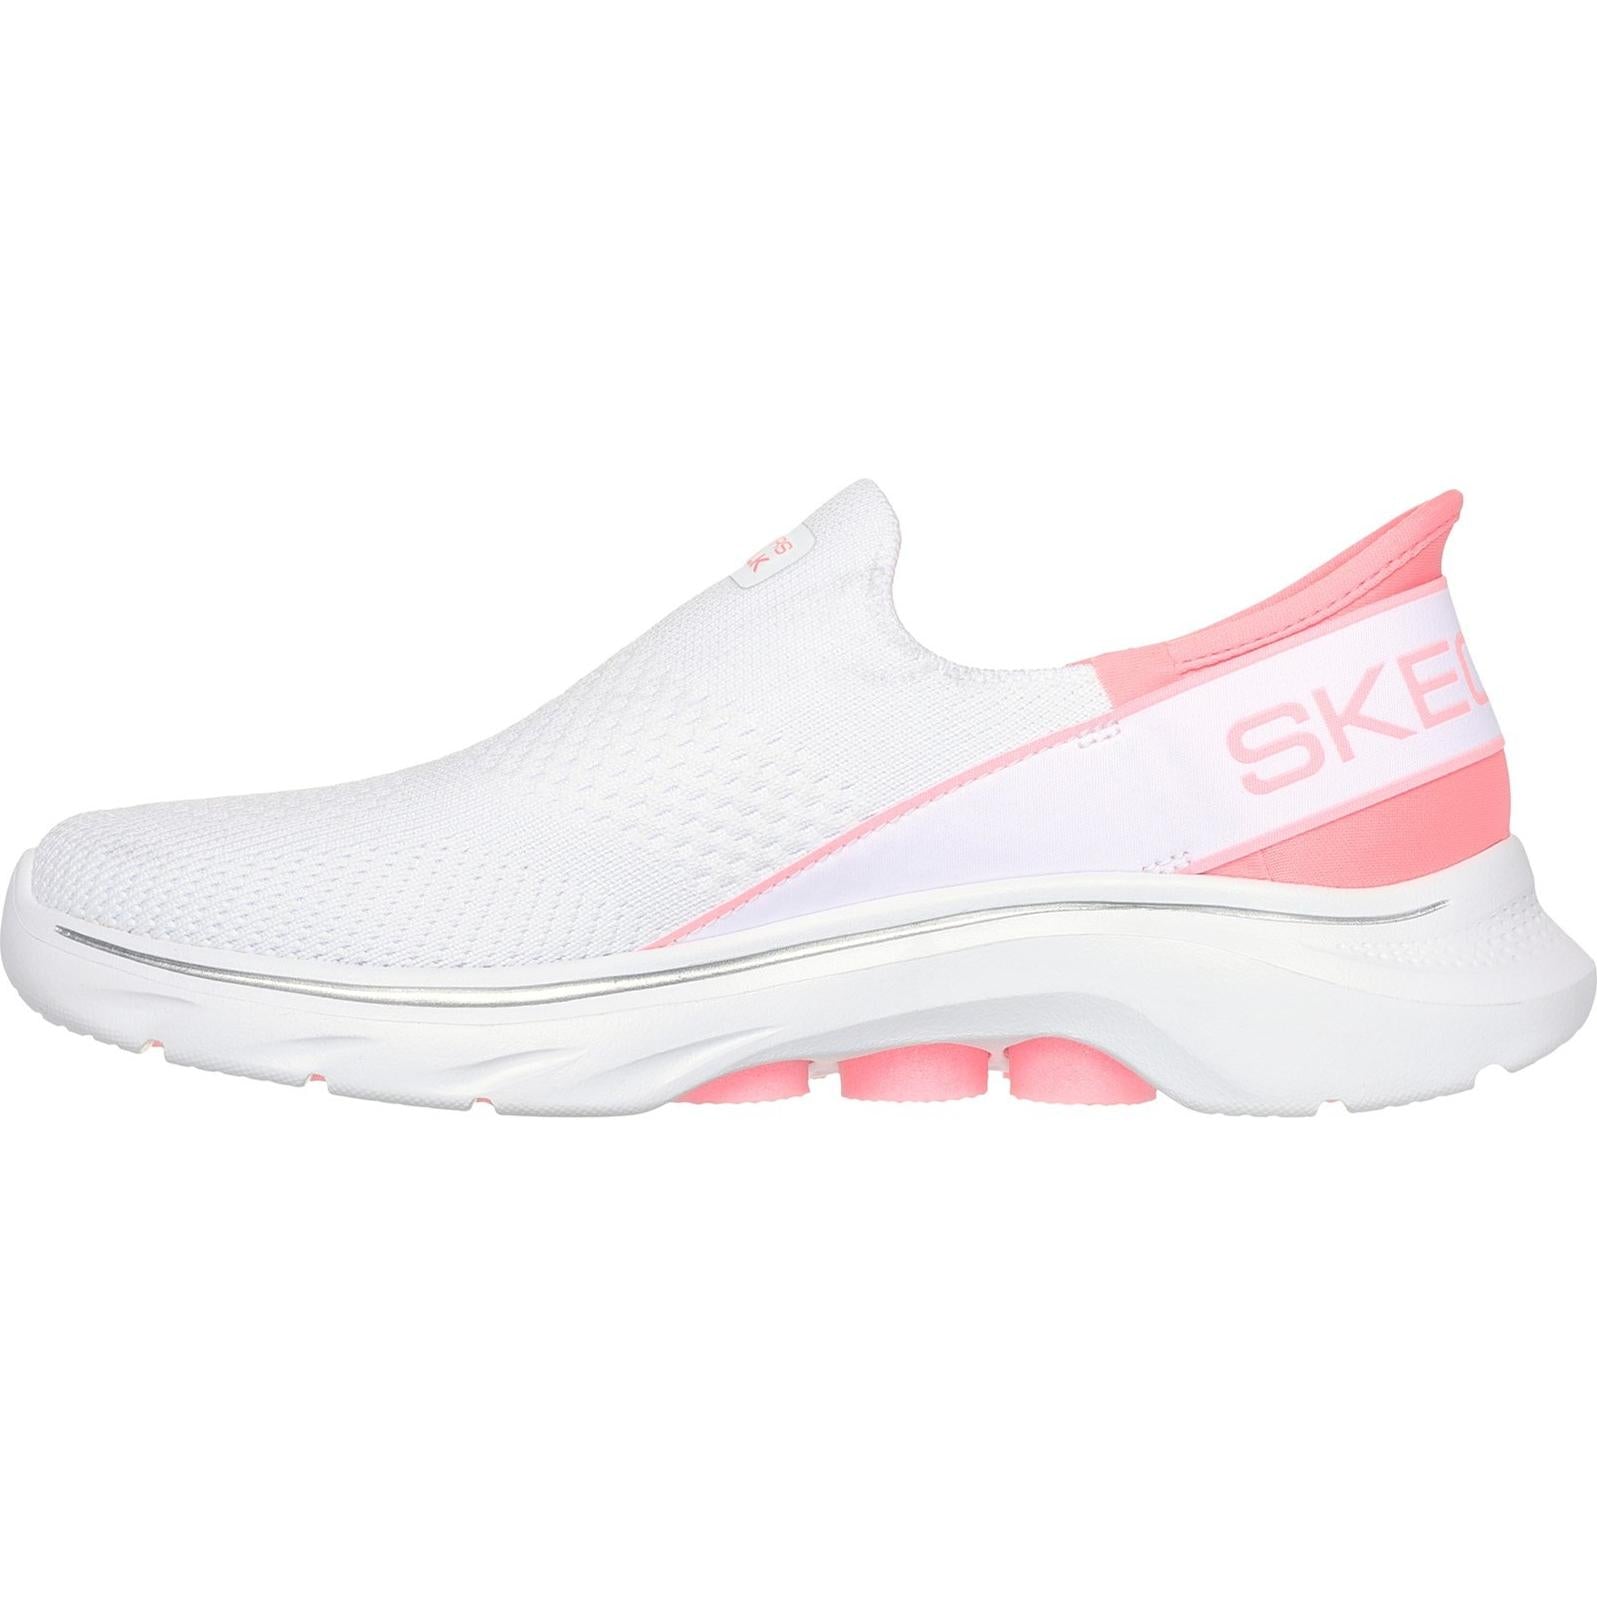 Skechers GO WALK 7 - Mia Shoe